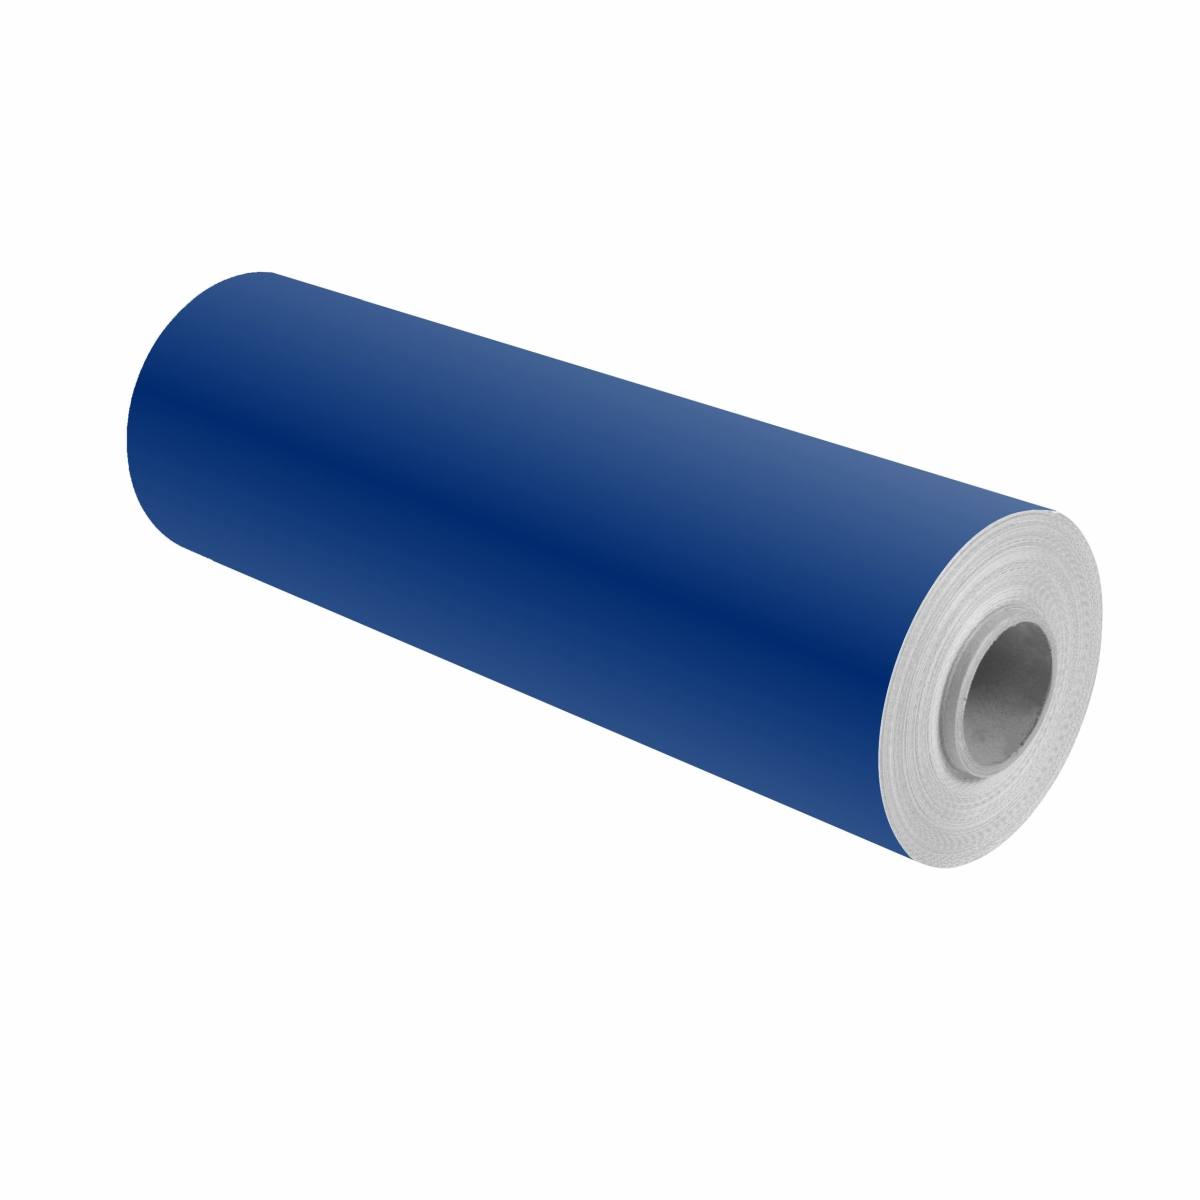 3M Scotchcal color film 100-37 ultramarine blue 1.22m x 25m